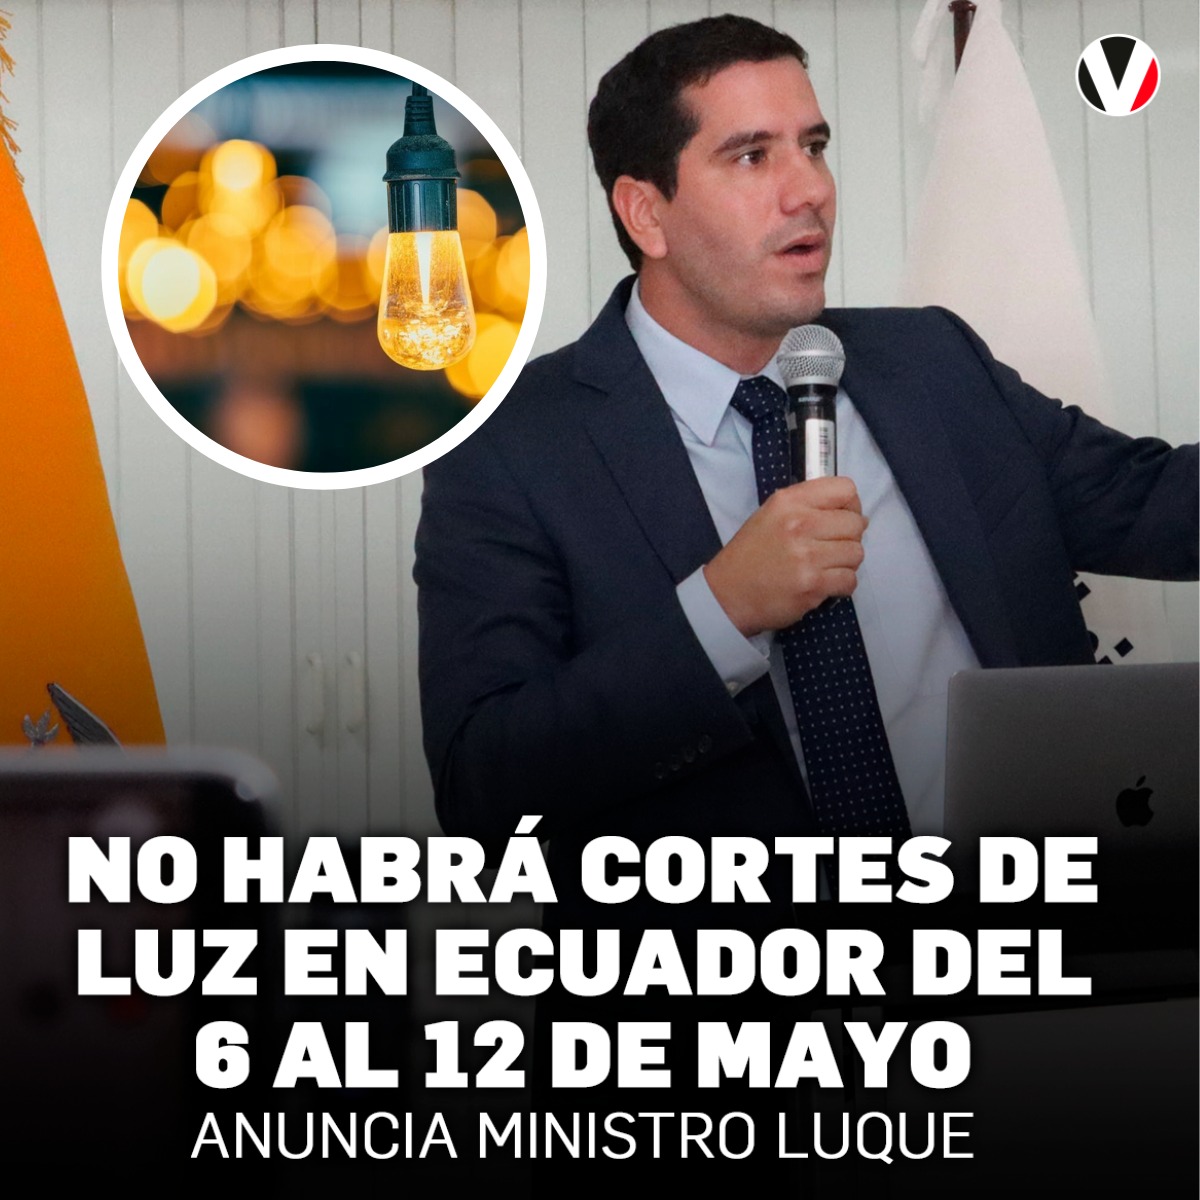 #LoMásLeído | El ministro de Energía y Minas (e), #RobertoLuque, anunció esta semana que no habrá cortes de luz en #Ecuador durante la semana del 6 al 12 de mayo debido a que la capacidad de suministro eléctrico ha mejorado por lluvias recientes. ▶️ v.vistazo.com/3yejcDQ